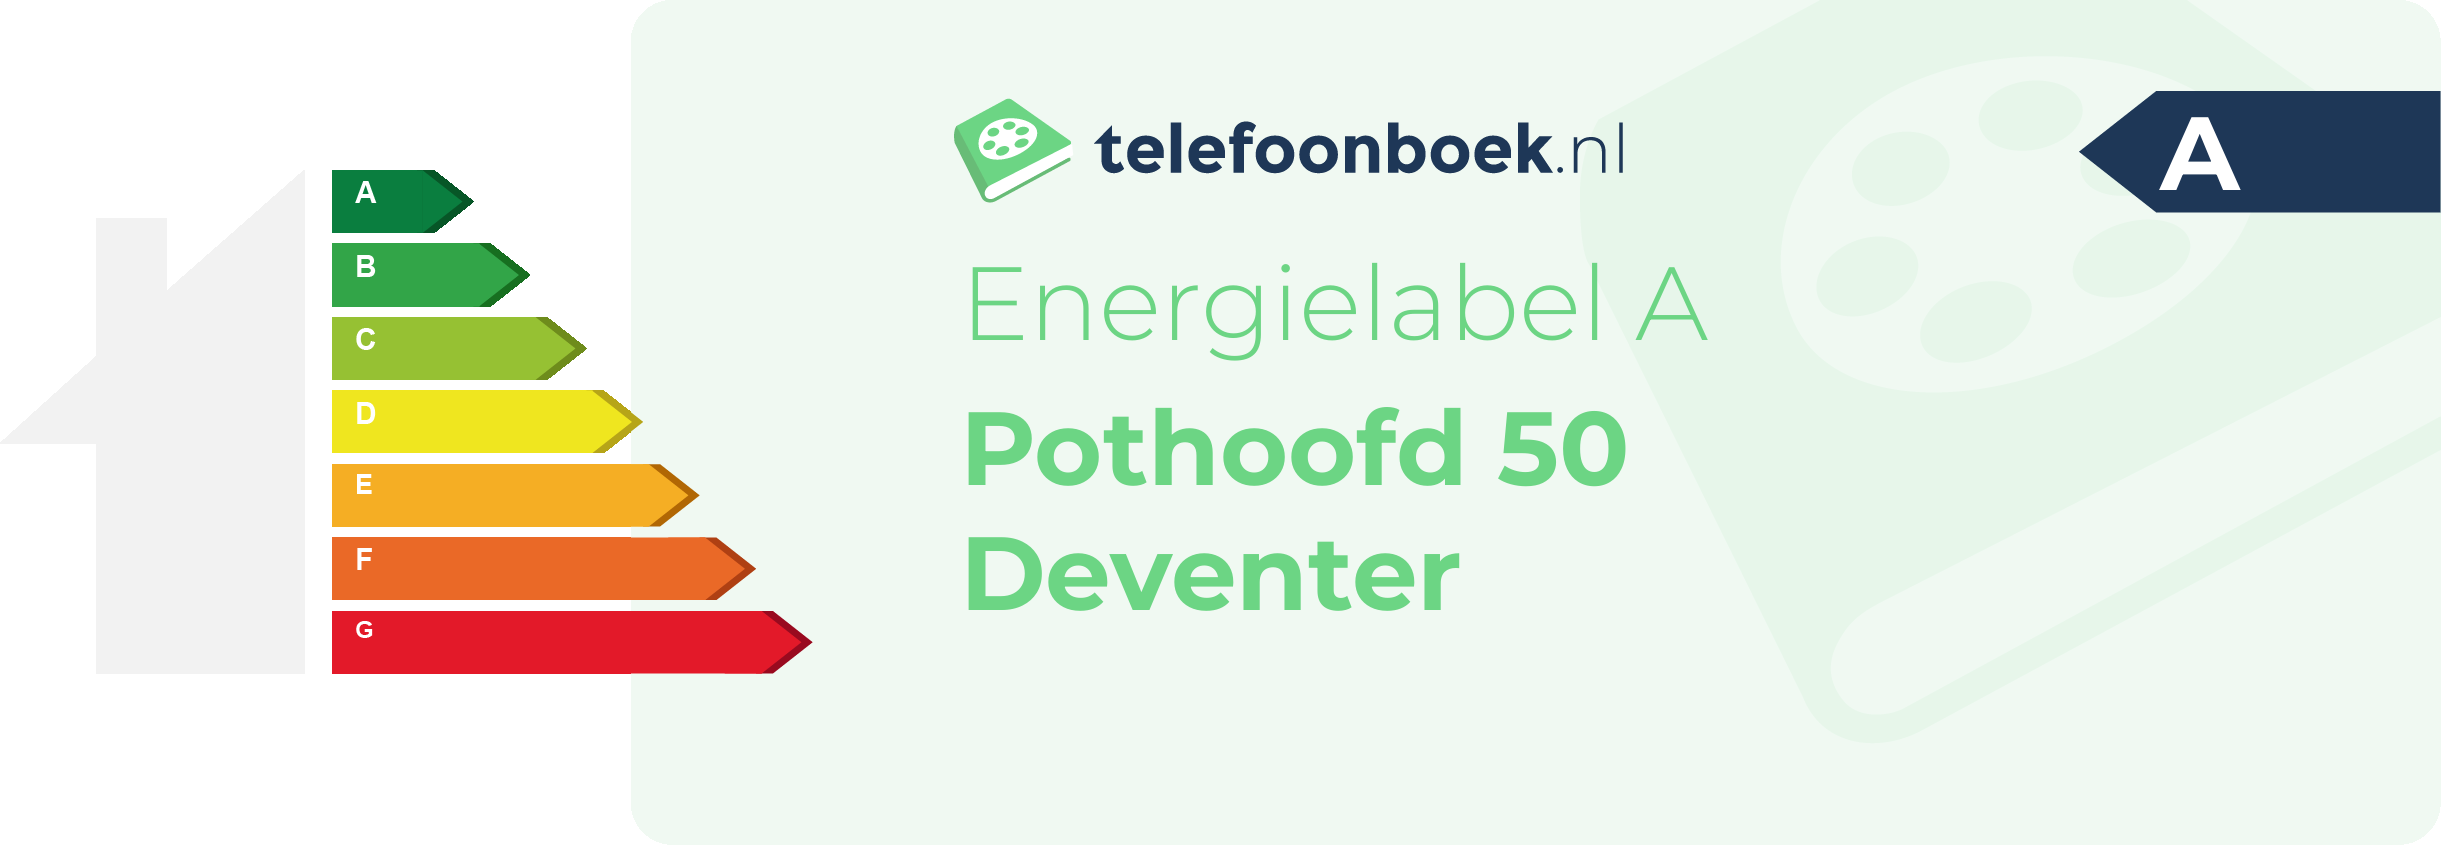 Energielabel Pothoofd 50 Deventer